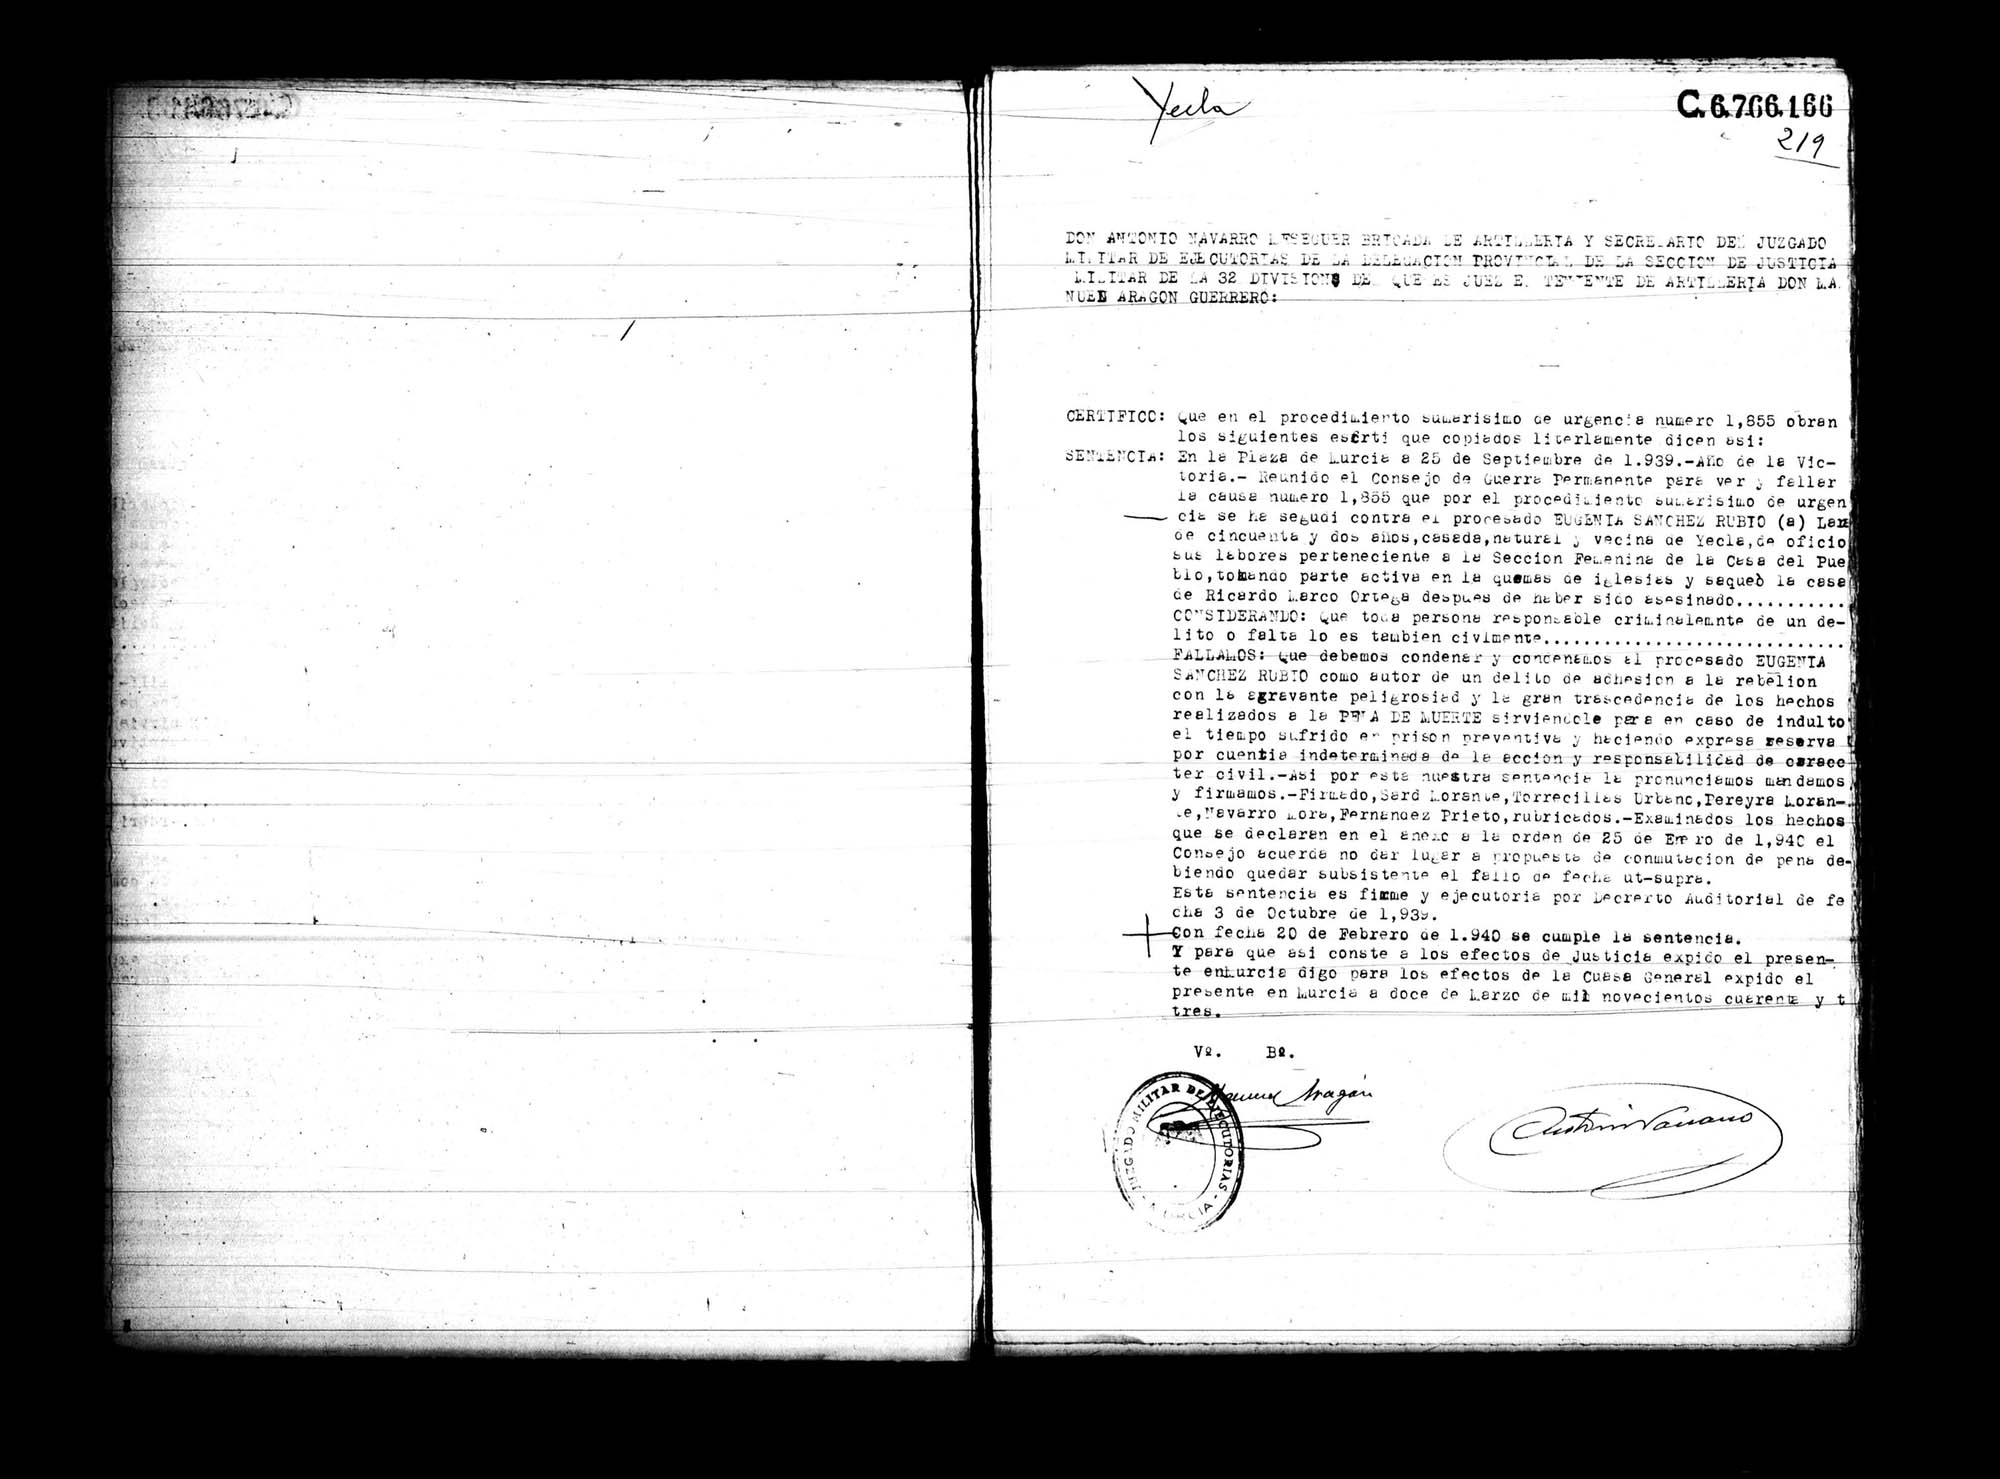 Certificado de la sentencia pronunciada contra Eugenia Sánchez Rubio, causa 1855, el 25 de septiembre de 1939 en Murcia.